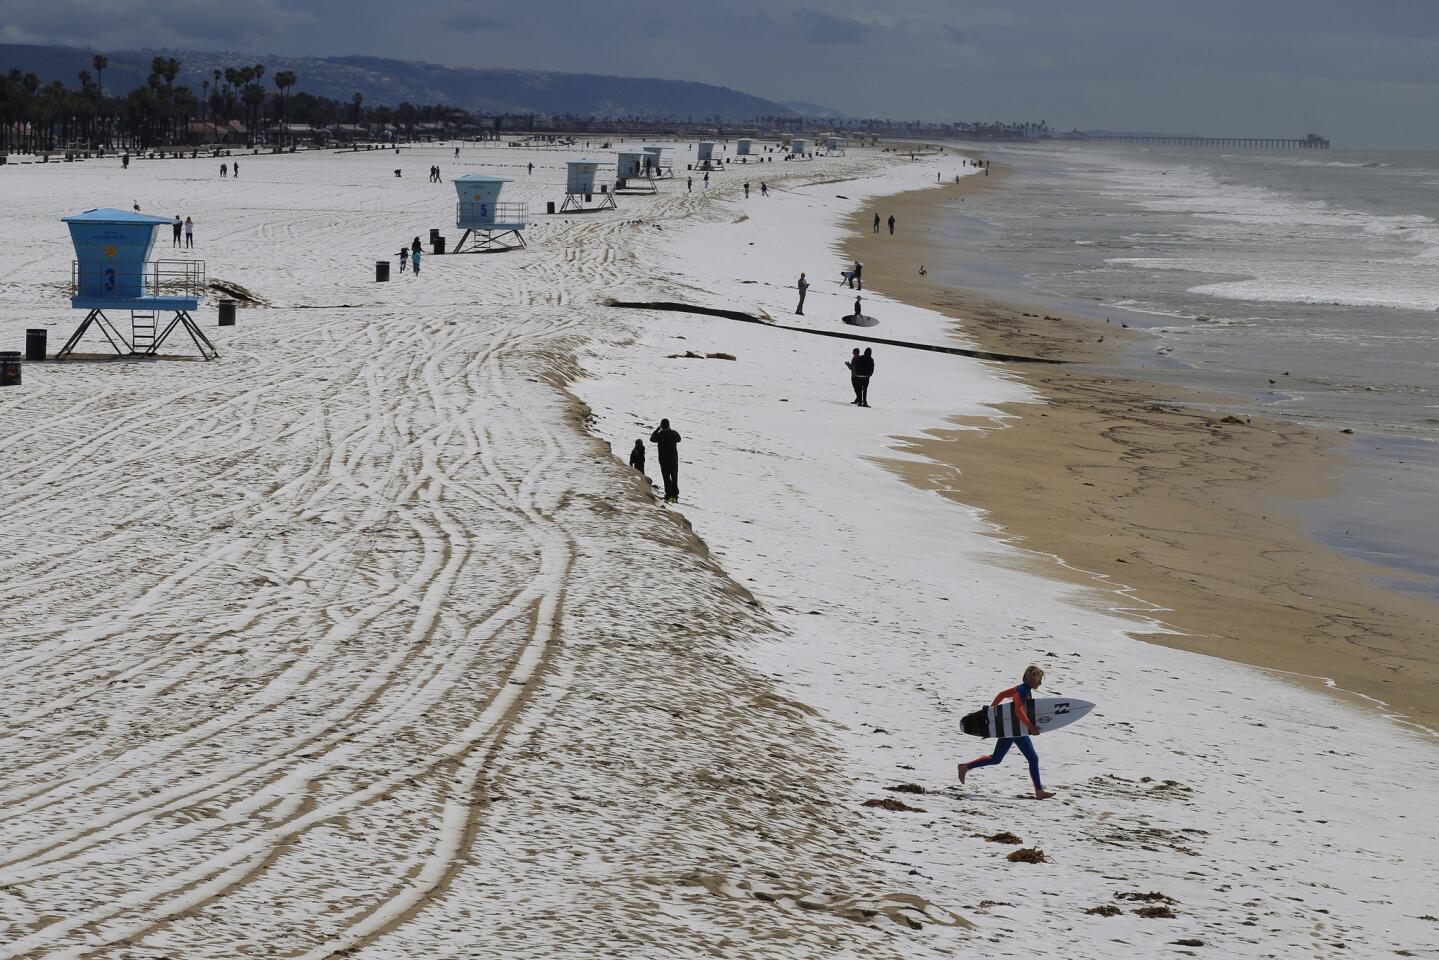 A surfer runs across the hail-covered sand in Huntington Beach.